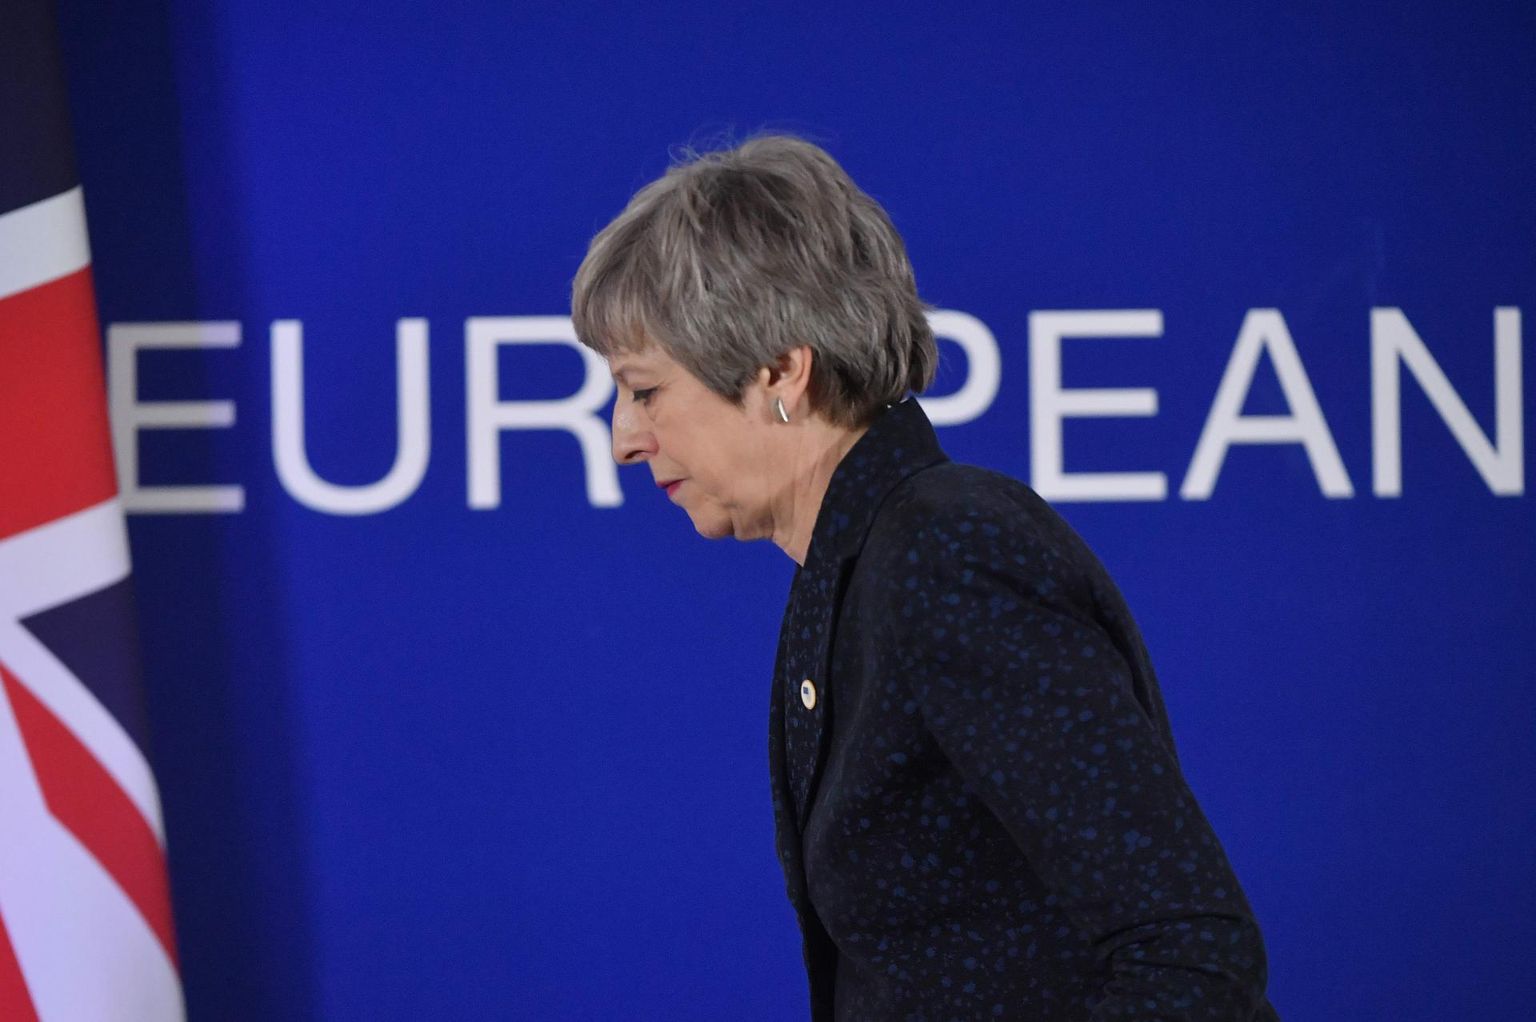 Briti peaminister Theresa May neljapäeval Brüsselis Euroopa Ülemkogul.  